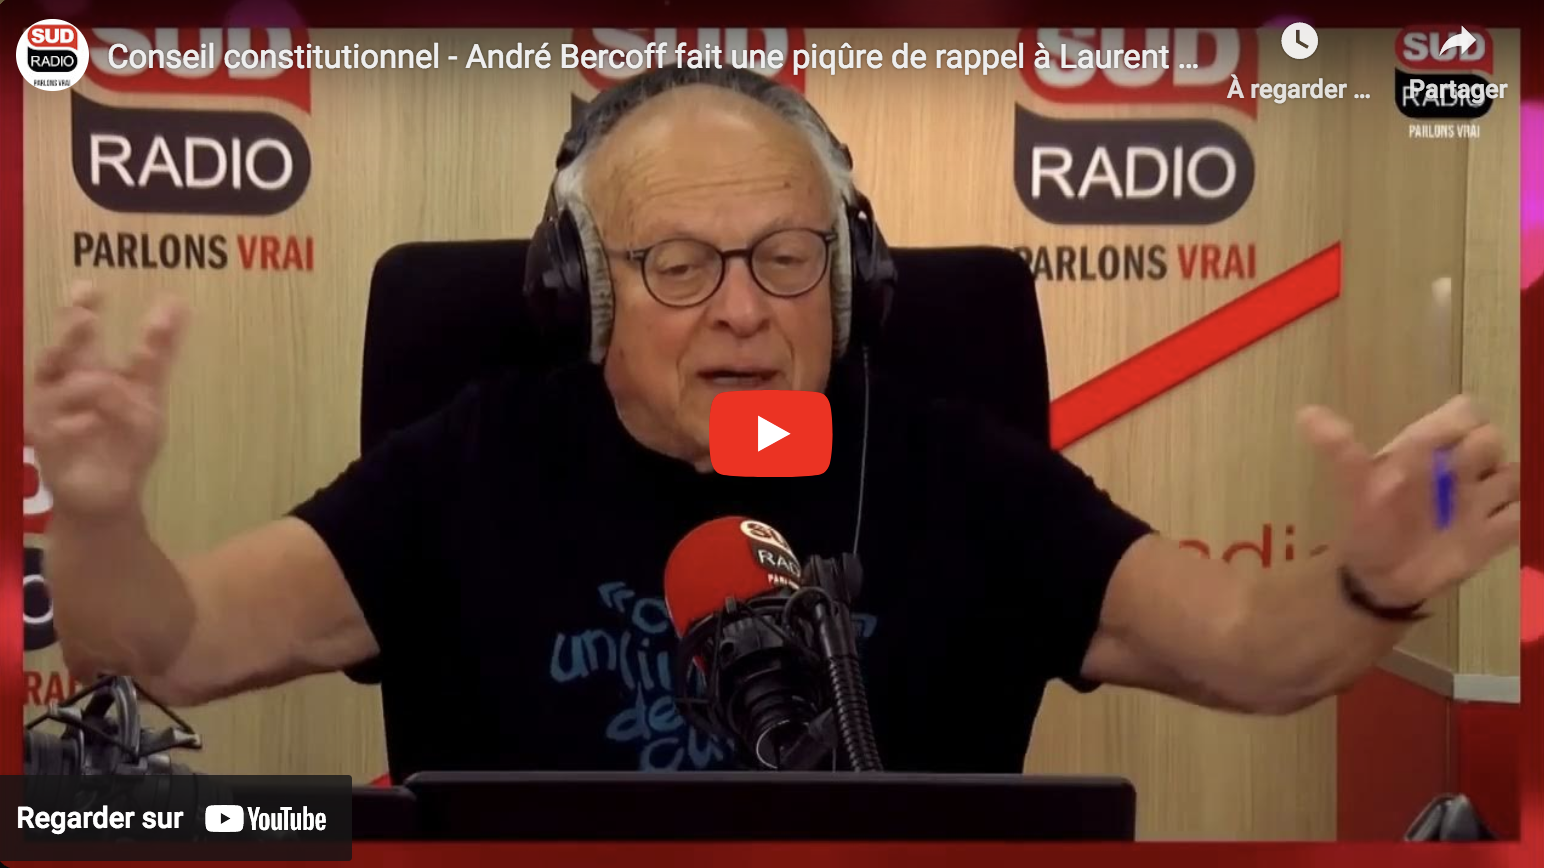 Conseil constitutionnel : André Bercoff fait une piqûre de rappel à Laurent Fabius (VIDÉO)